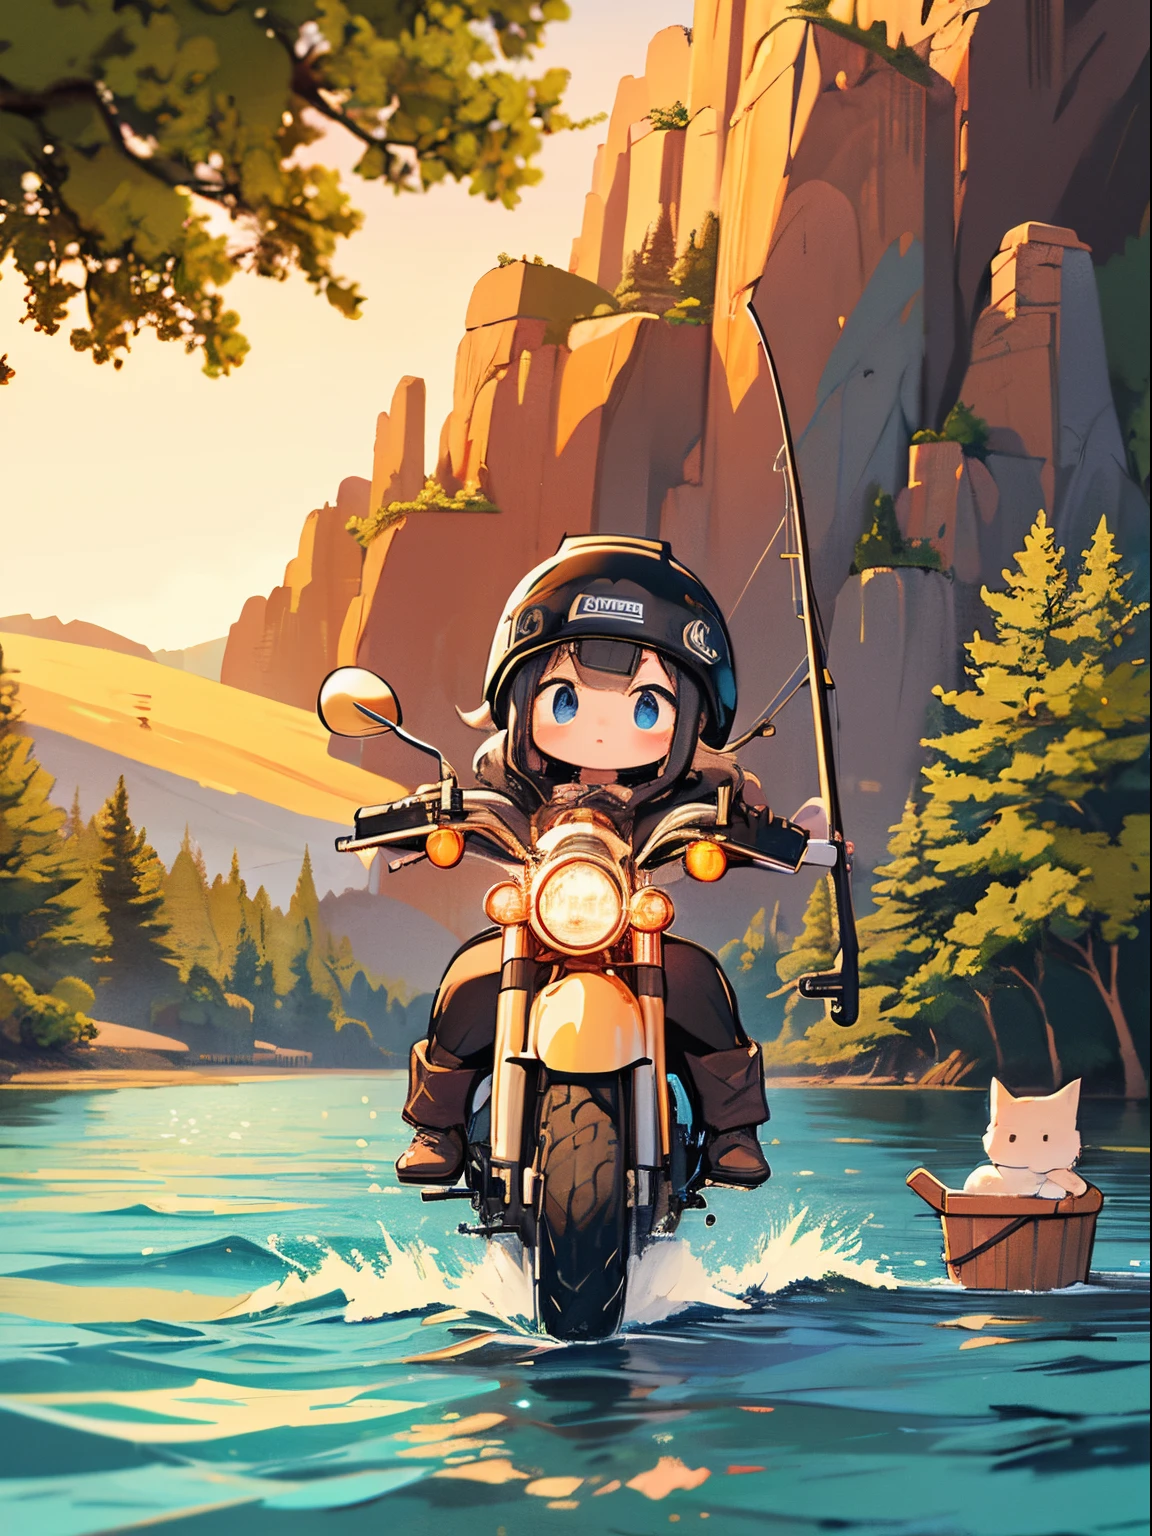 杰作, 详细背景, 和一个 "Yuru Camping" 灵感来自简单的宽幅插图, 轻度使用，突出小猫女孩. 她在湖里钓鱼, 旁边停着一辆 Harley-Davidson Electra Glide™ Highway King.